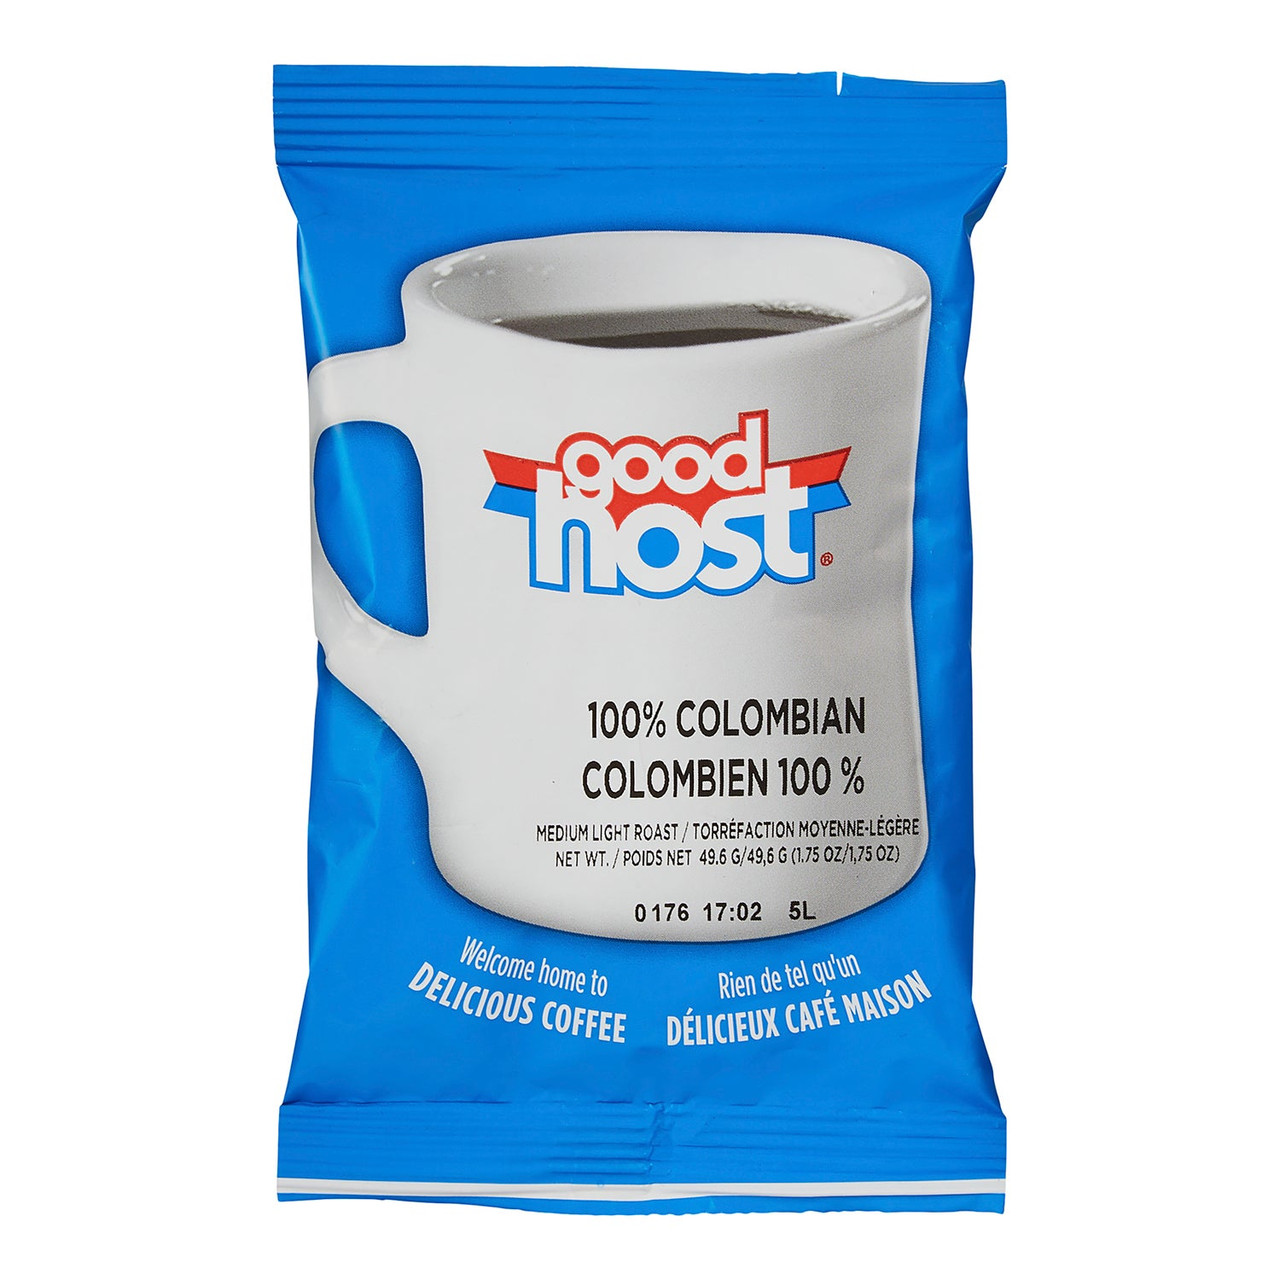 Goodhost Colombian Coffee